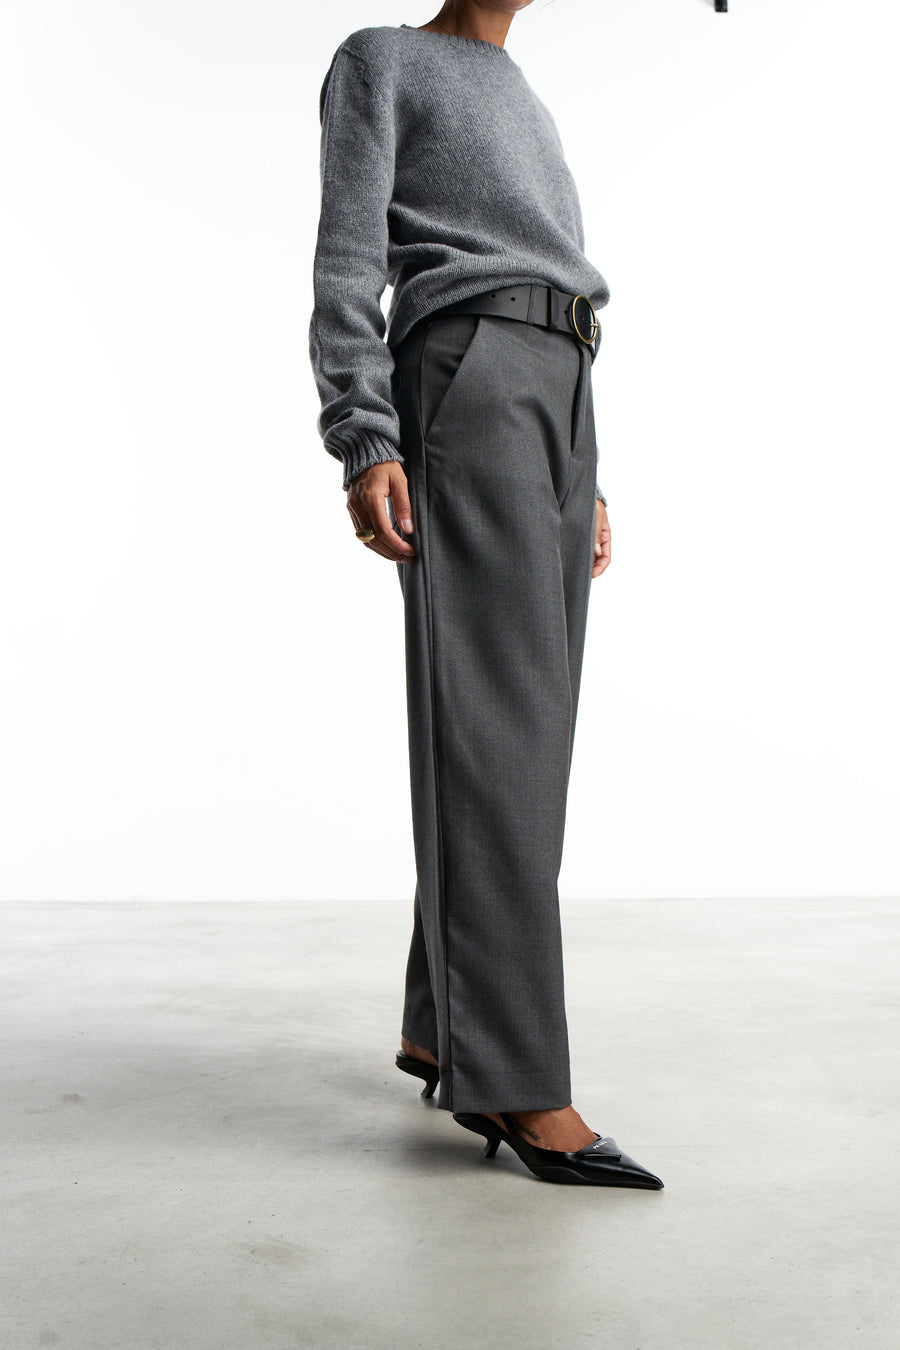 Pantalone Ettore |  Fresco Di Lana grigio medio